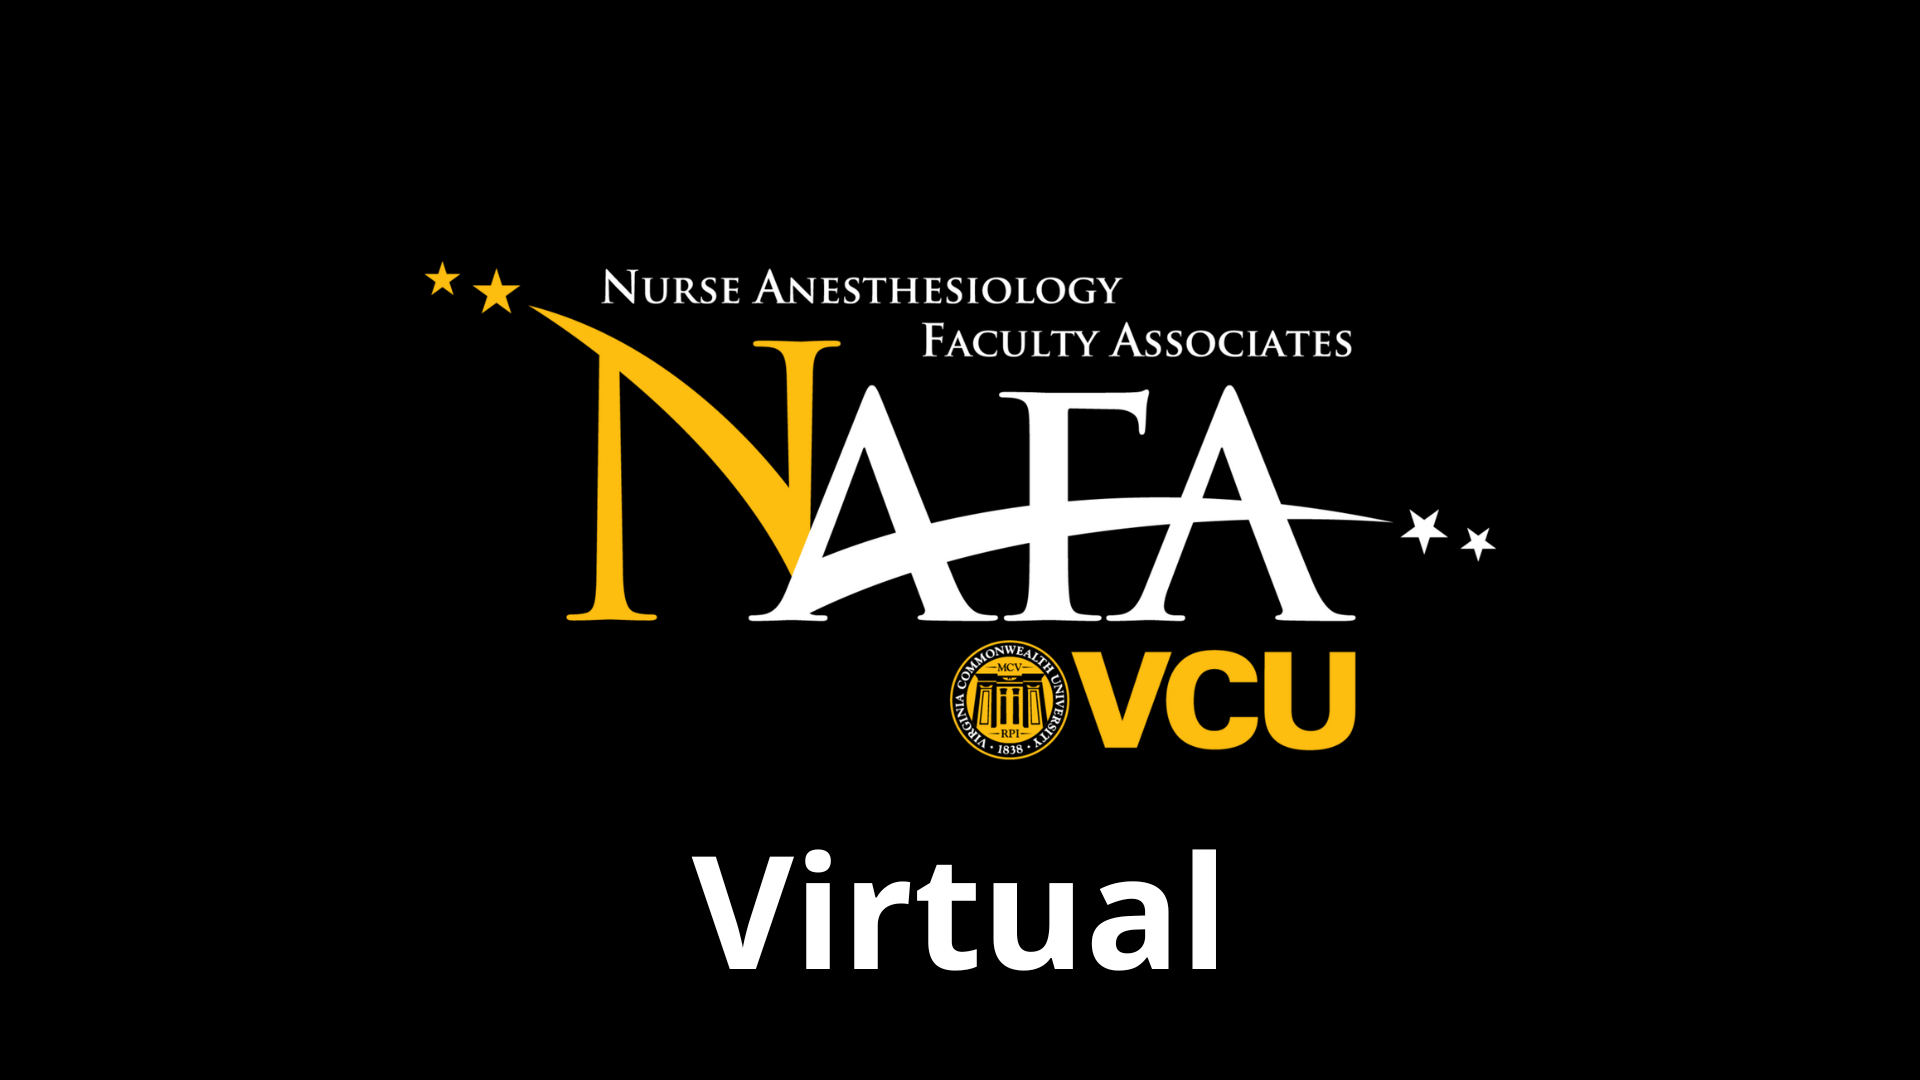 NAFA Virtual